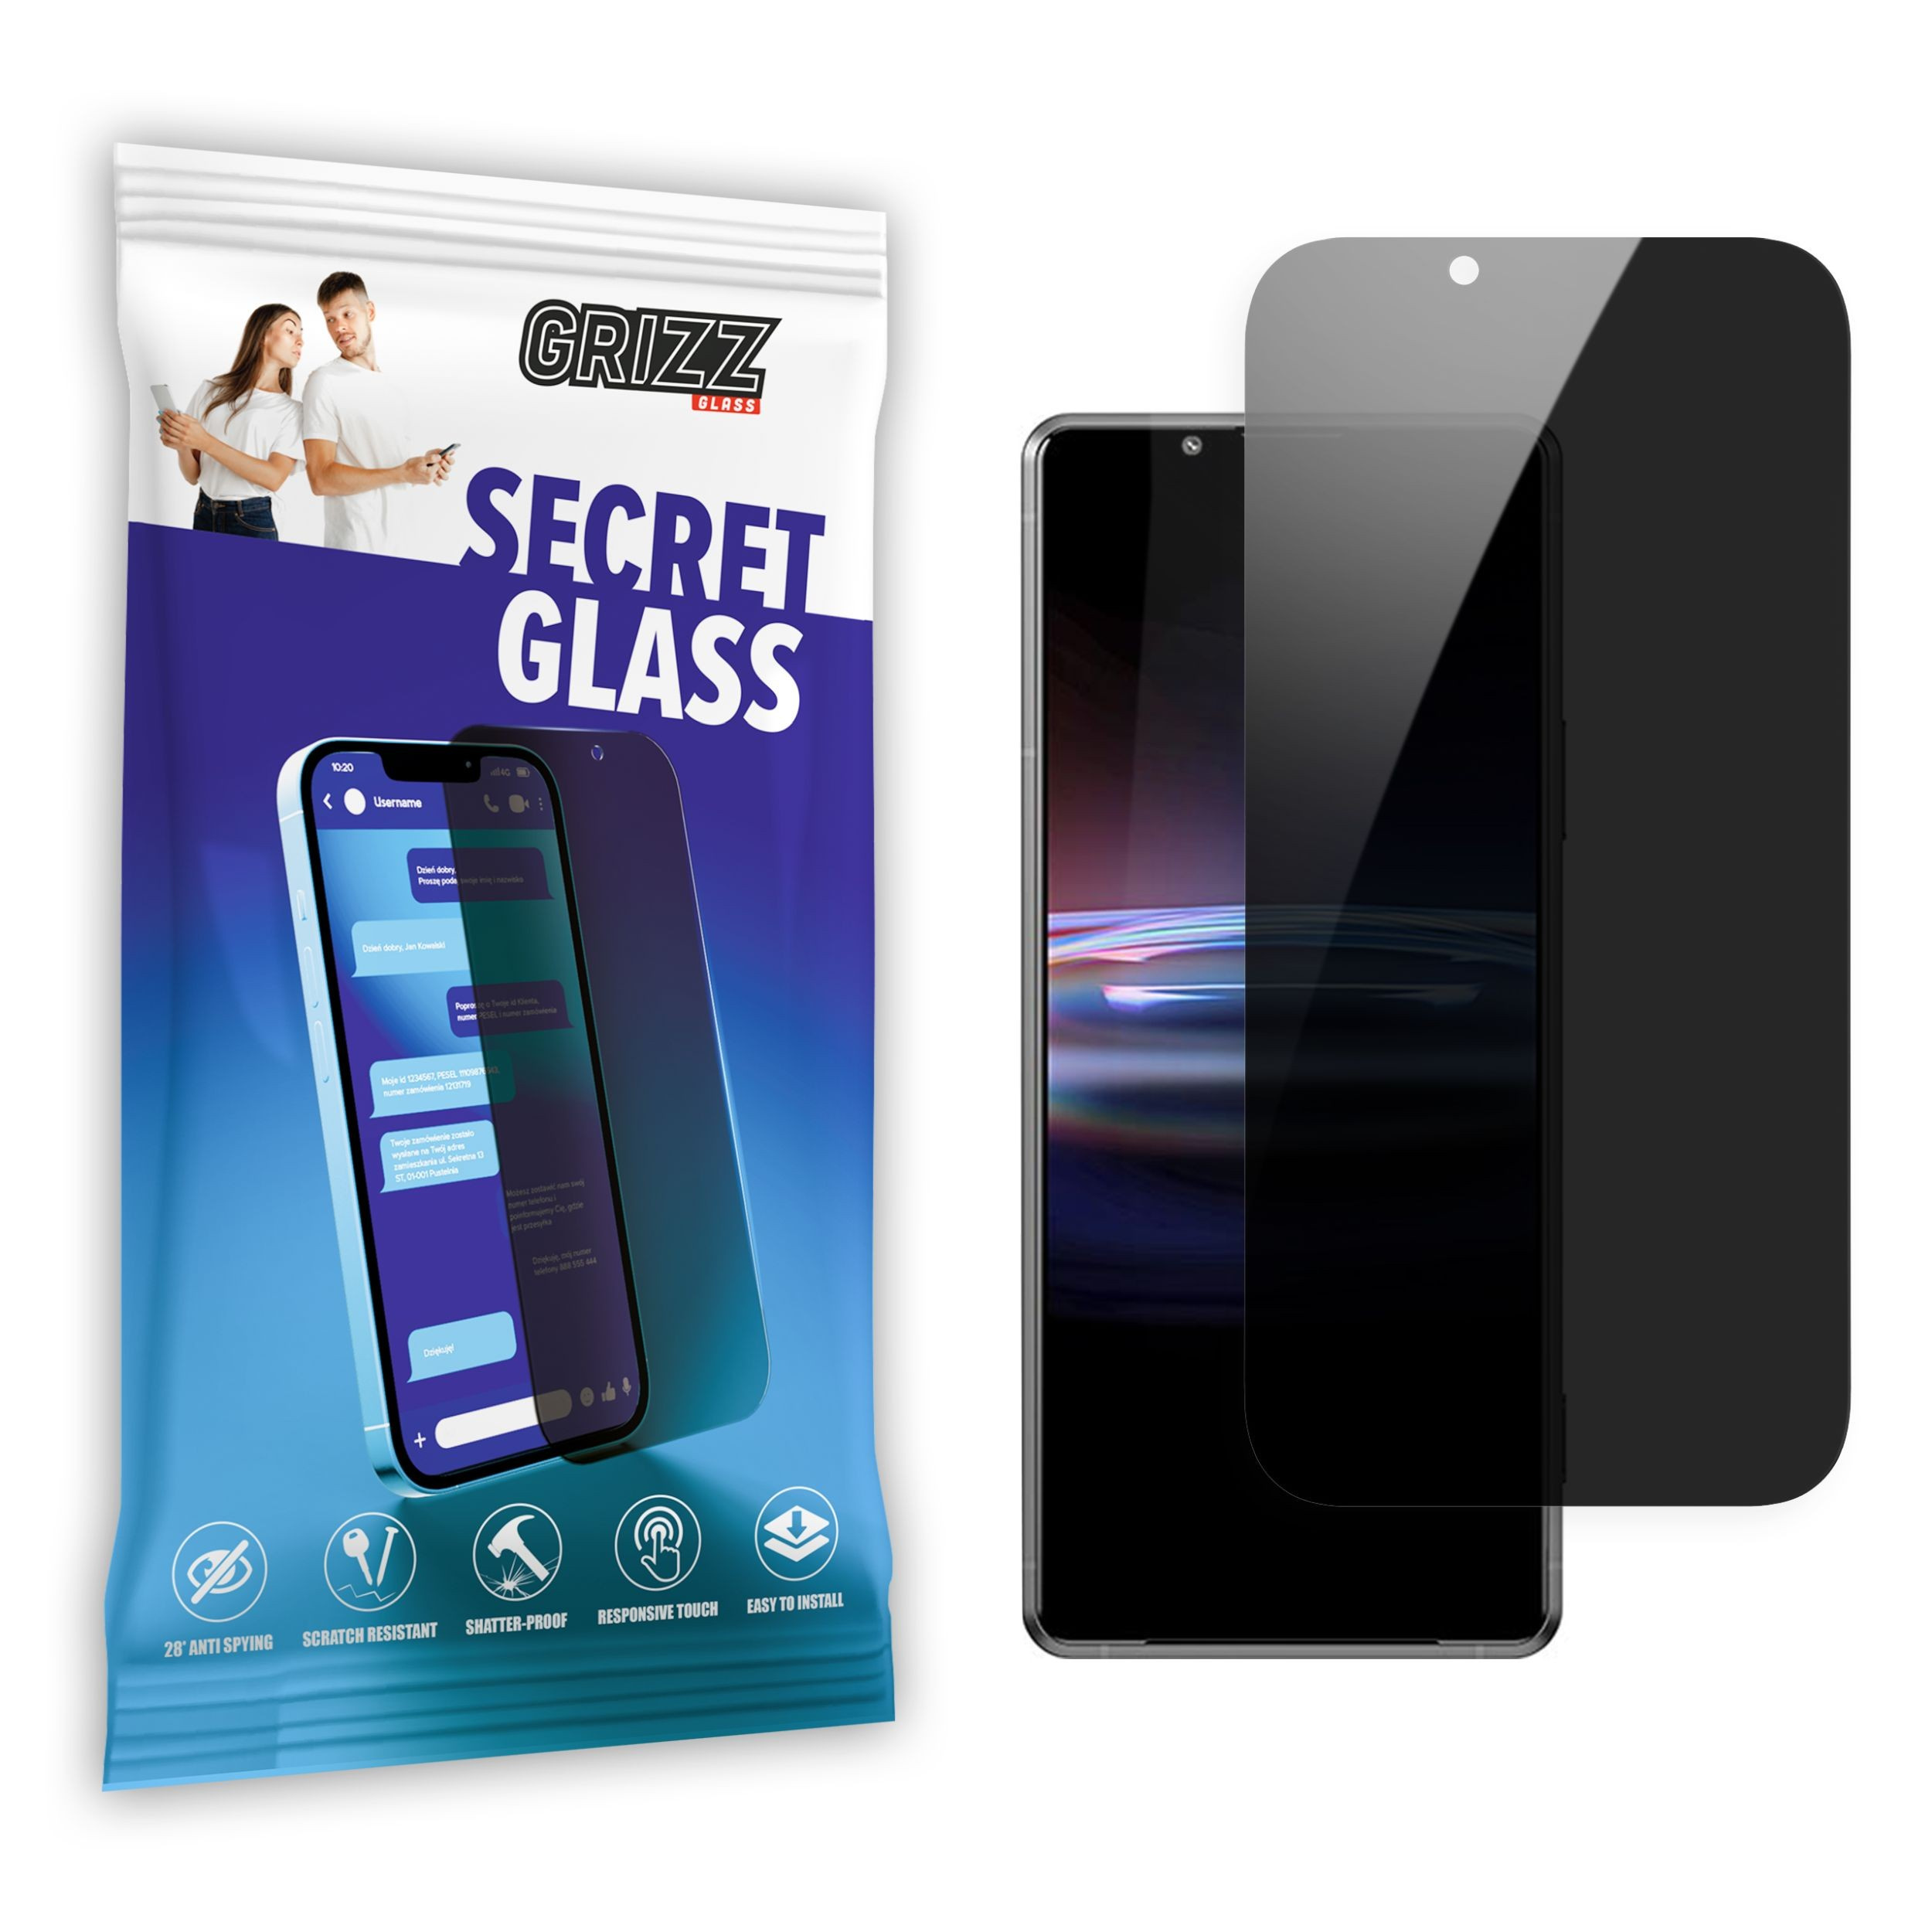 GrizzGlass SecretGlass Sony Xperia Pro-I